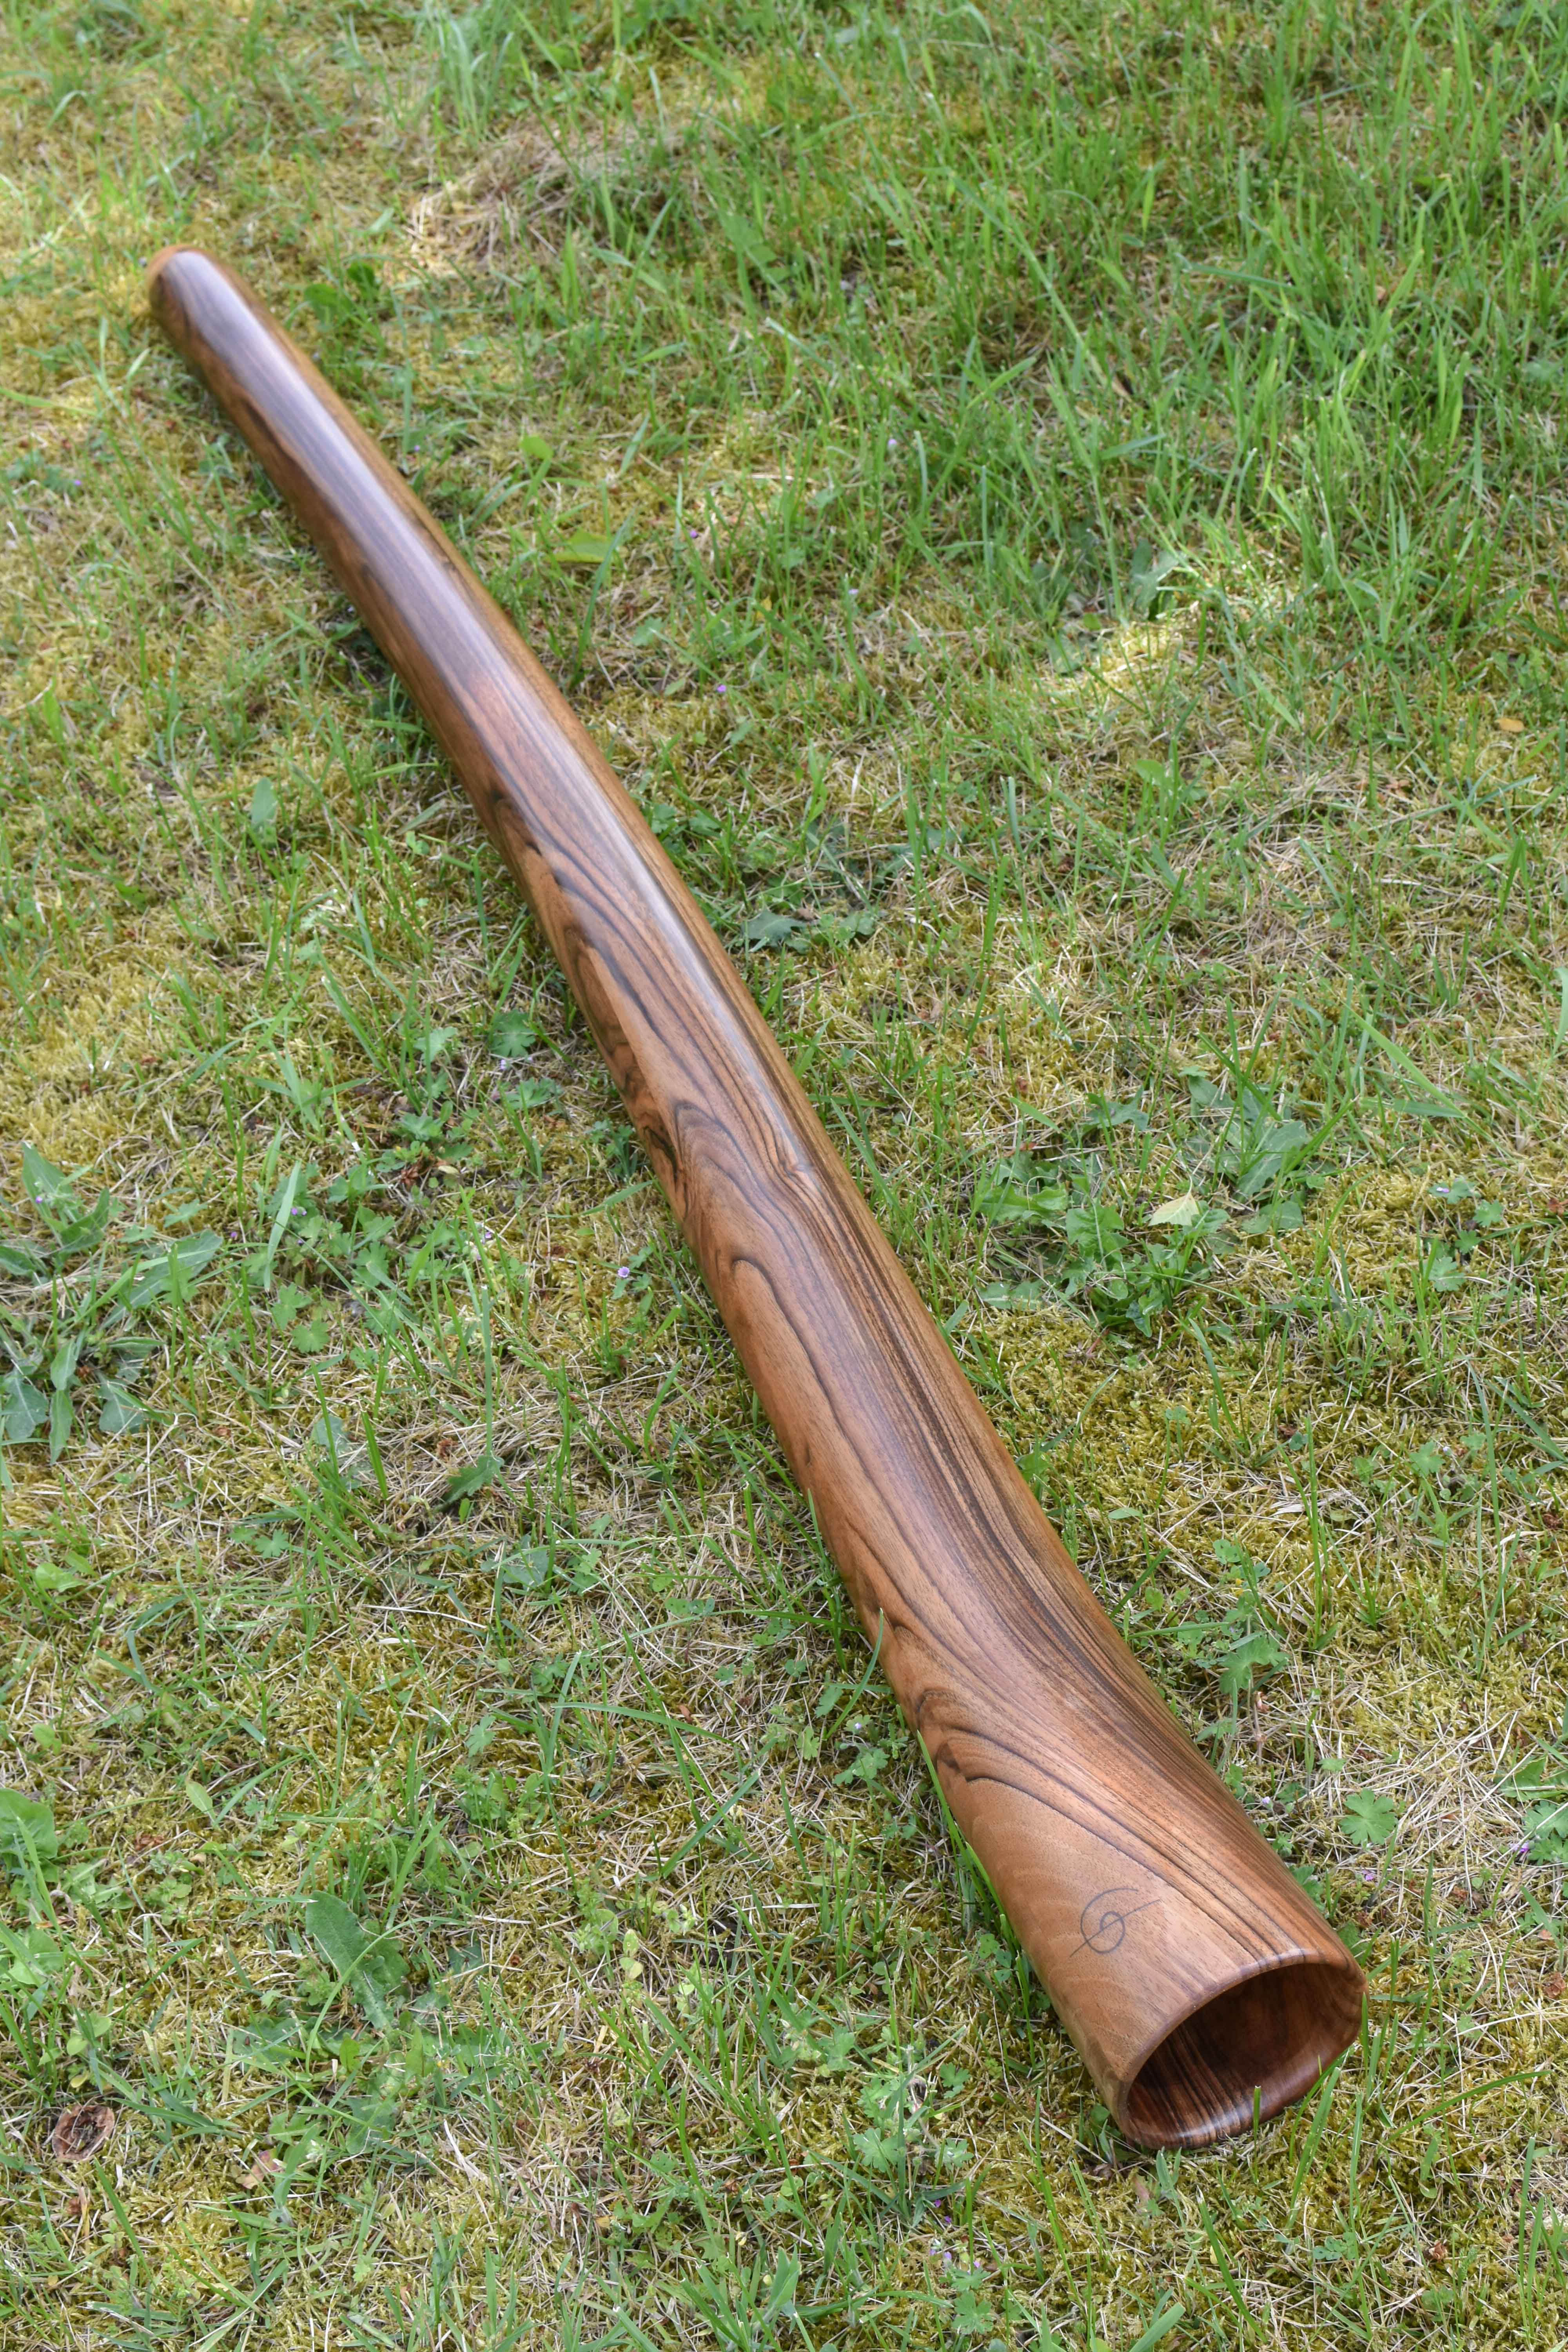  Didgeridoo nommé Kanga, en Do, légèrement courbé, fabriqué dans un magnifique bois de noyer